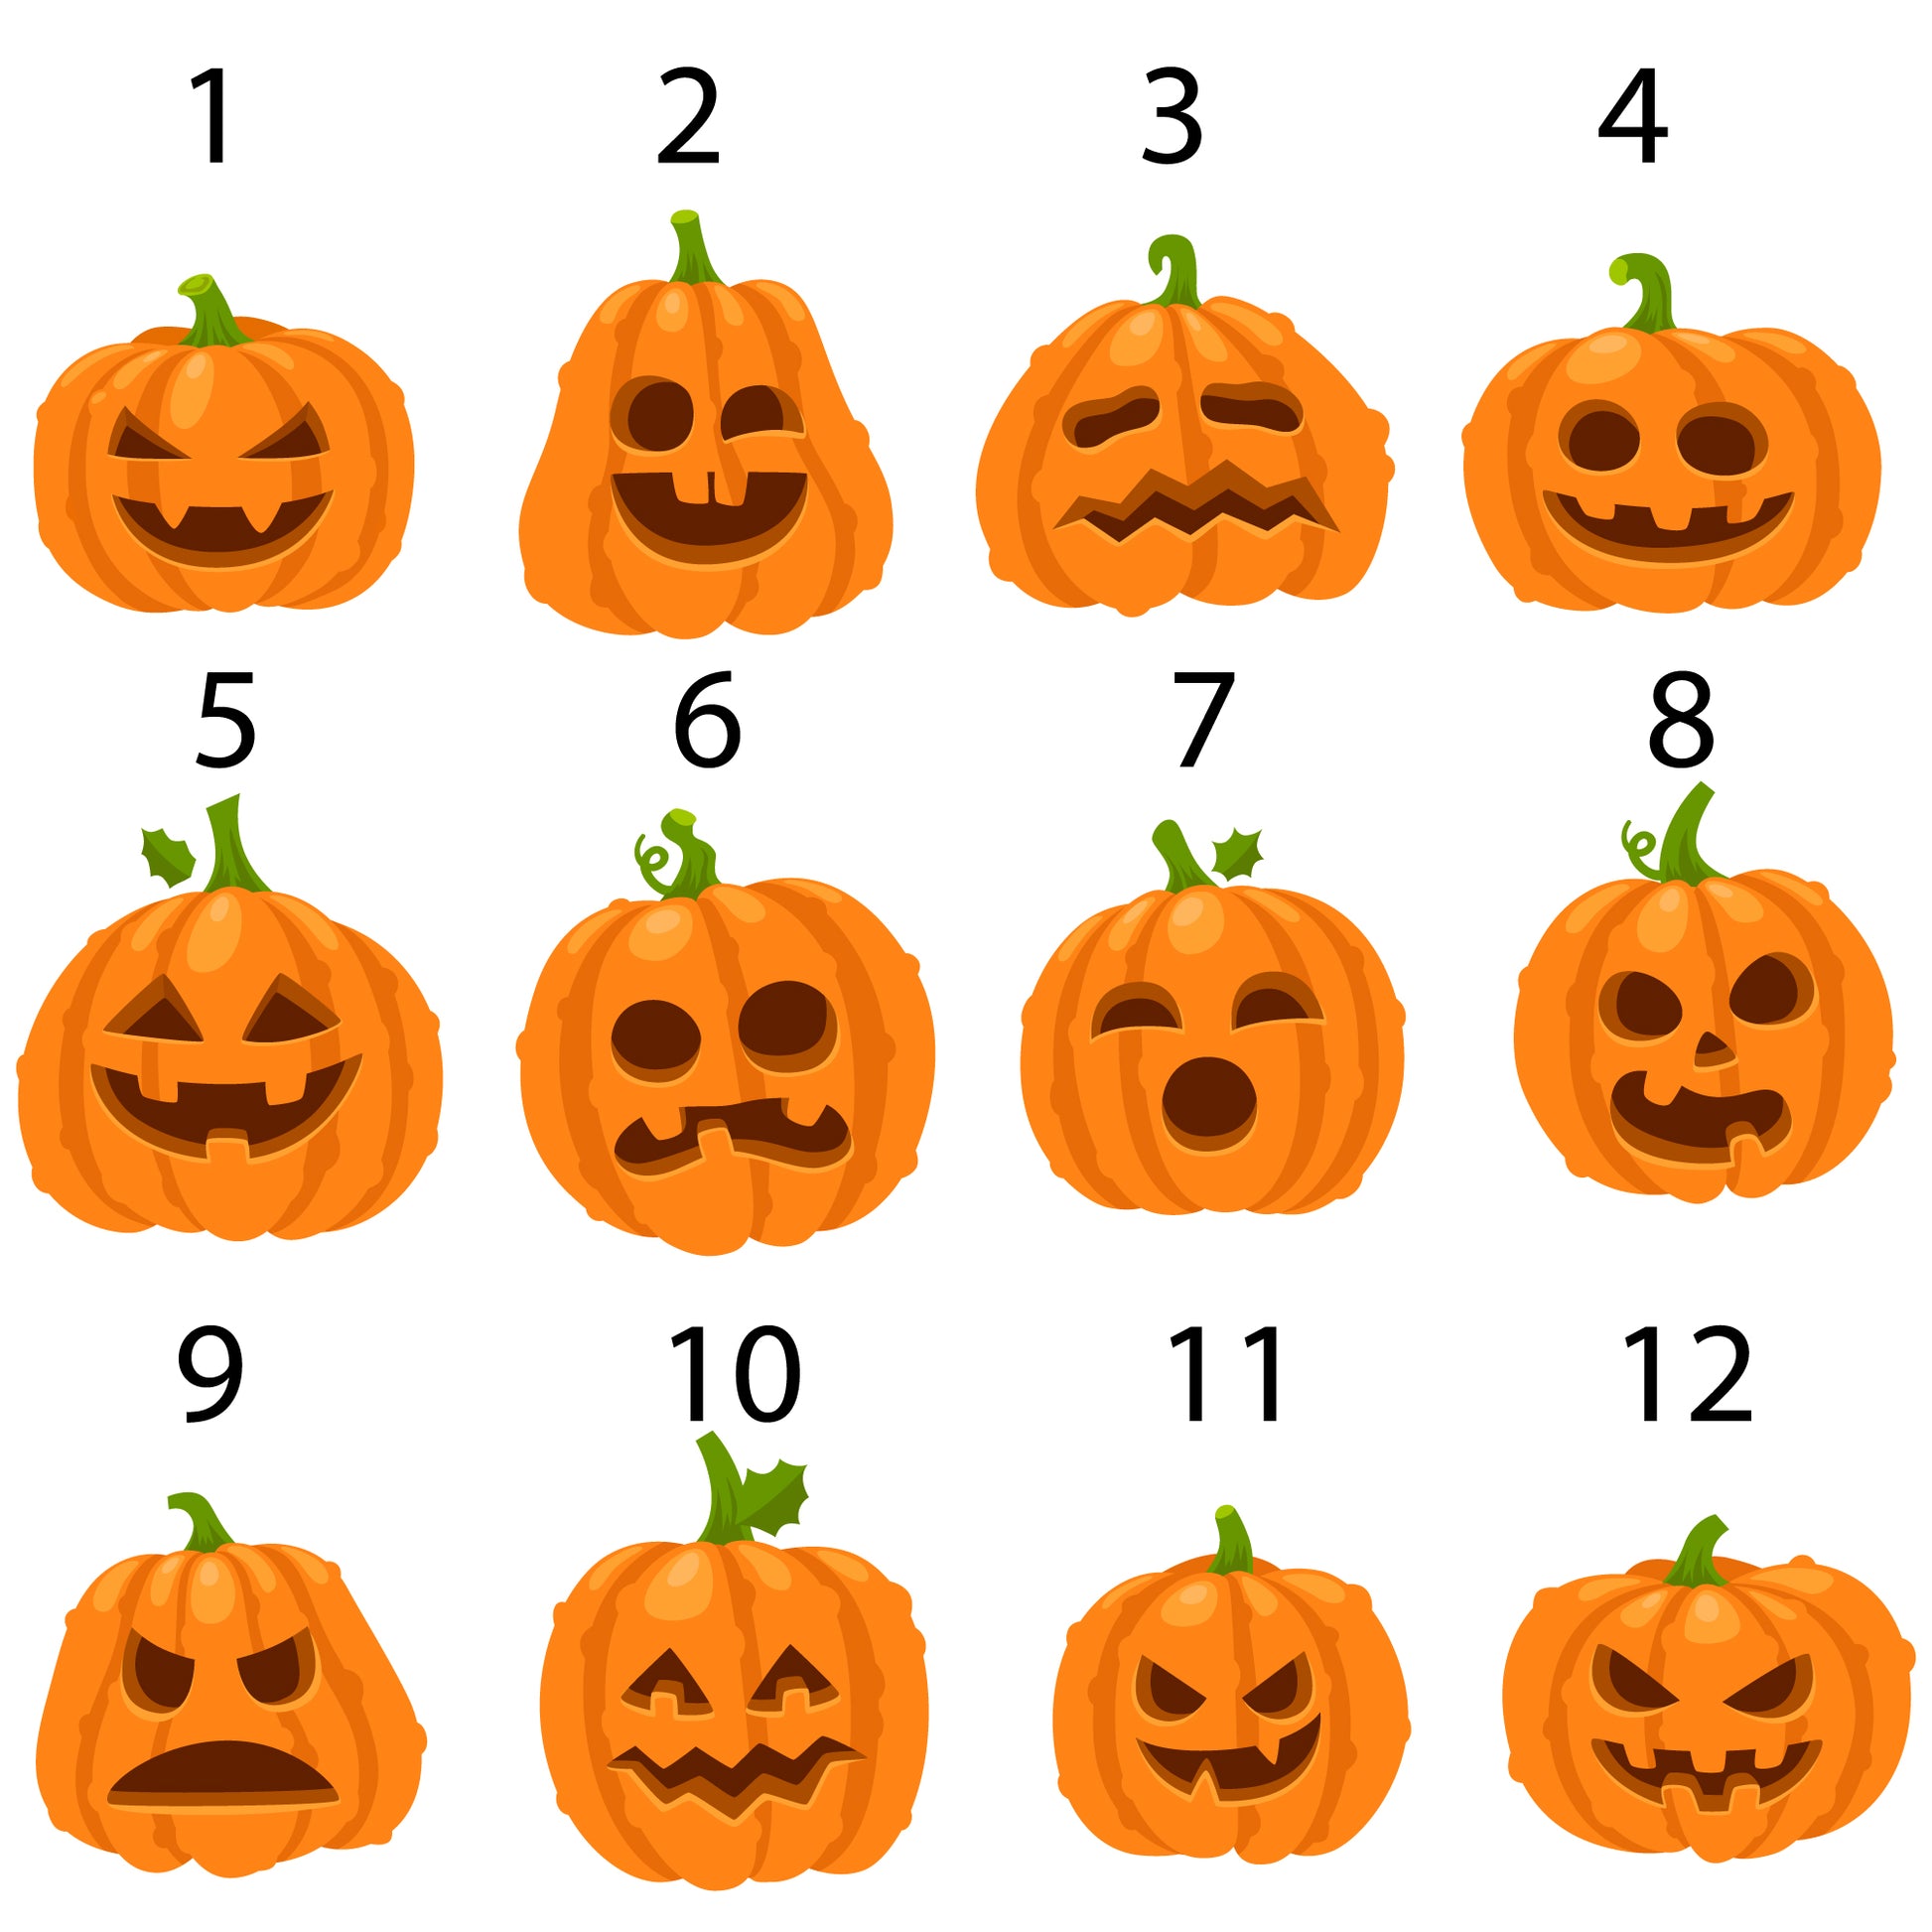 pumpkin faces